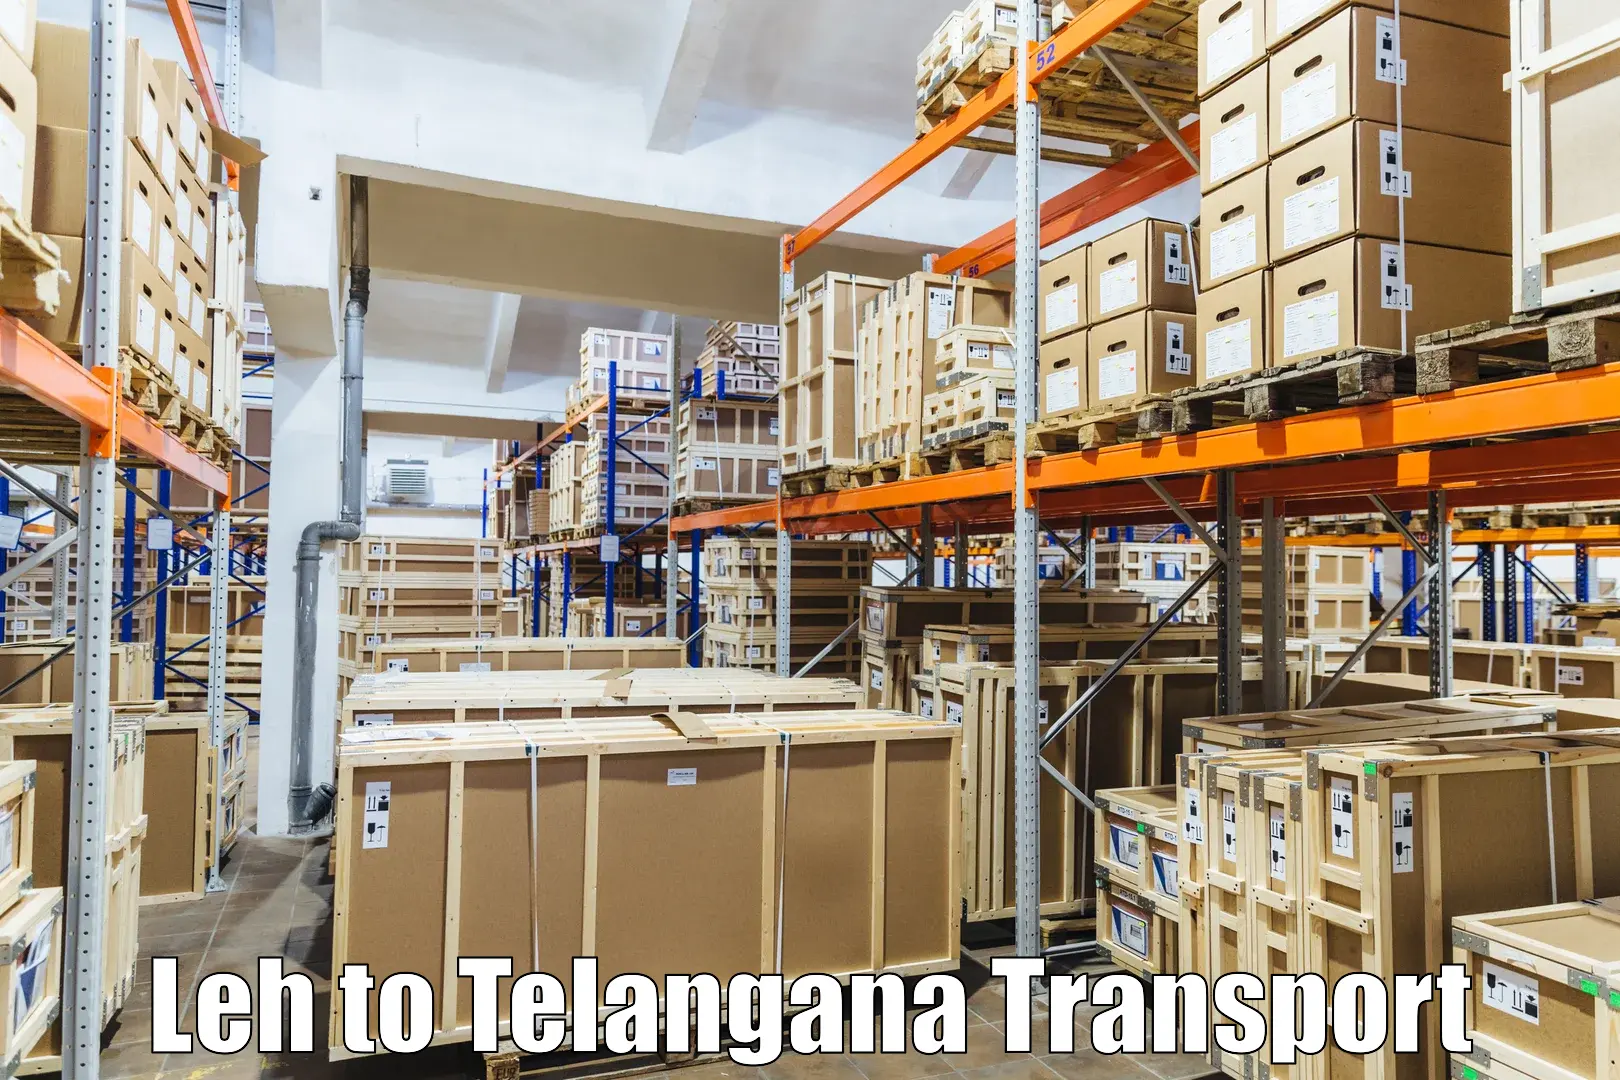 Lorry transport service Leh to Gangadhara